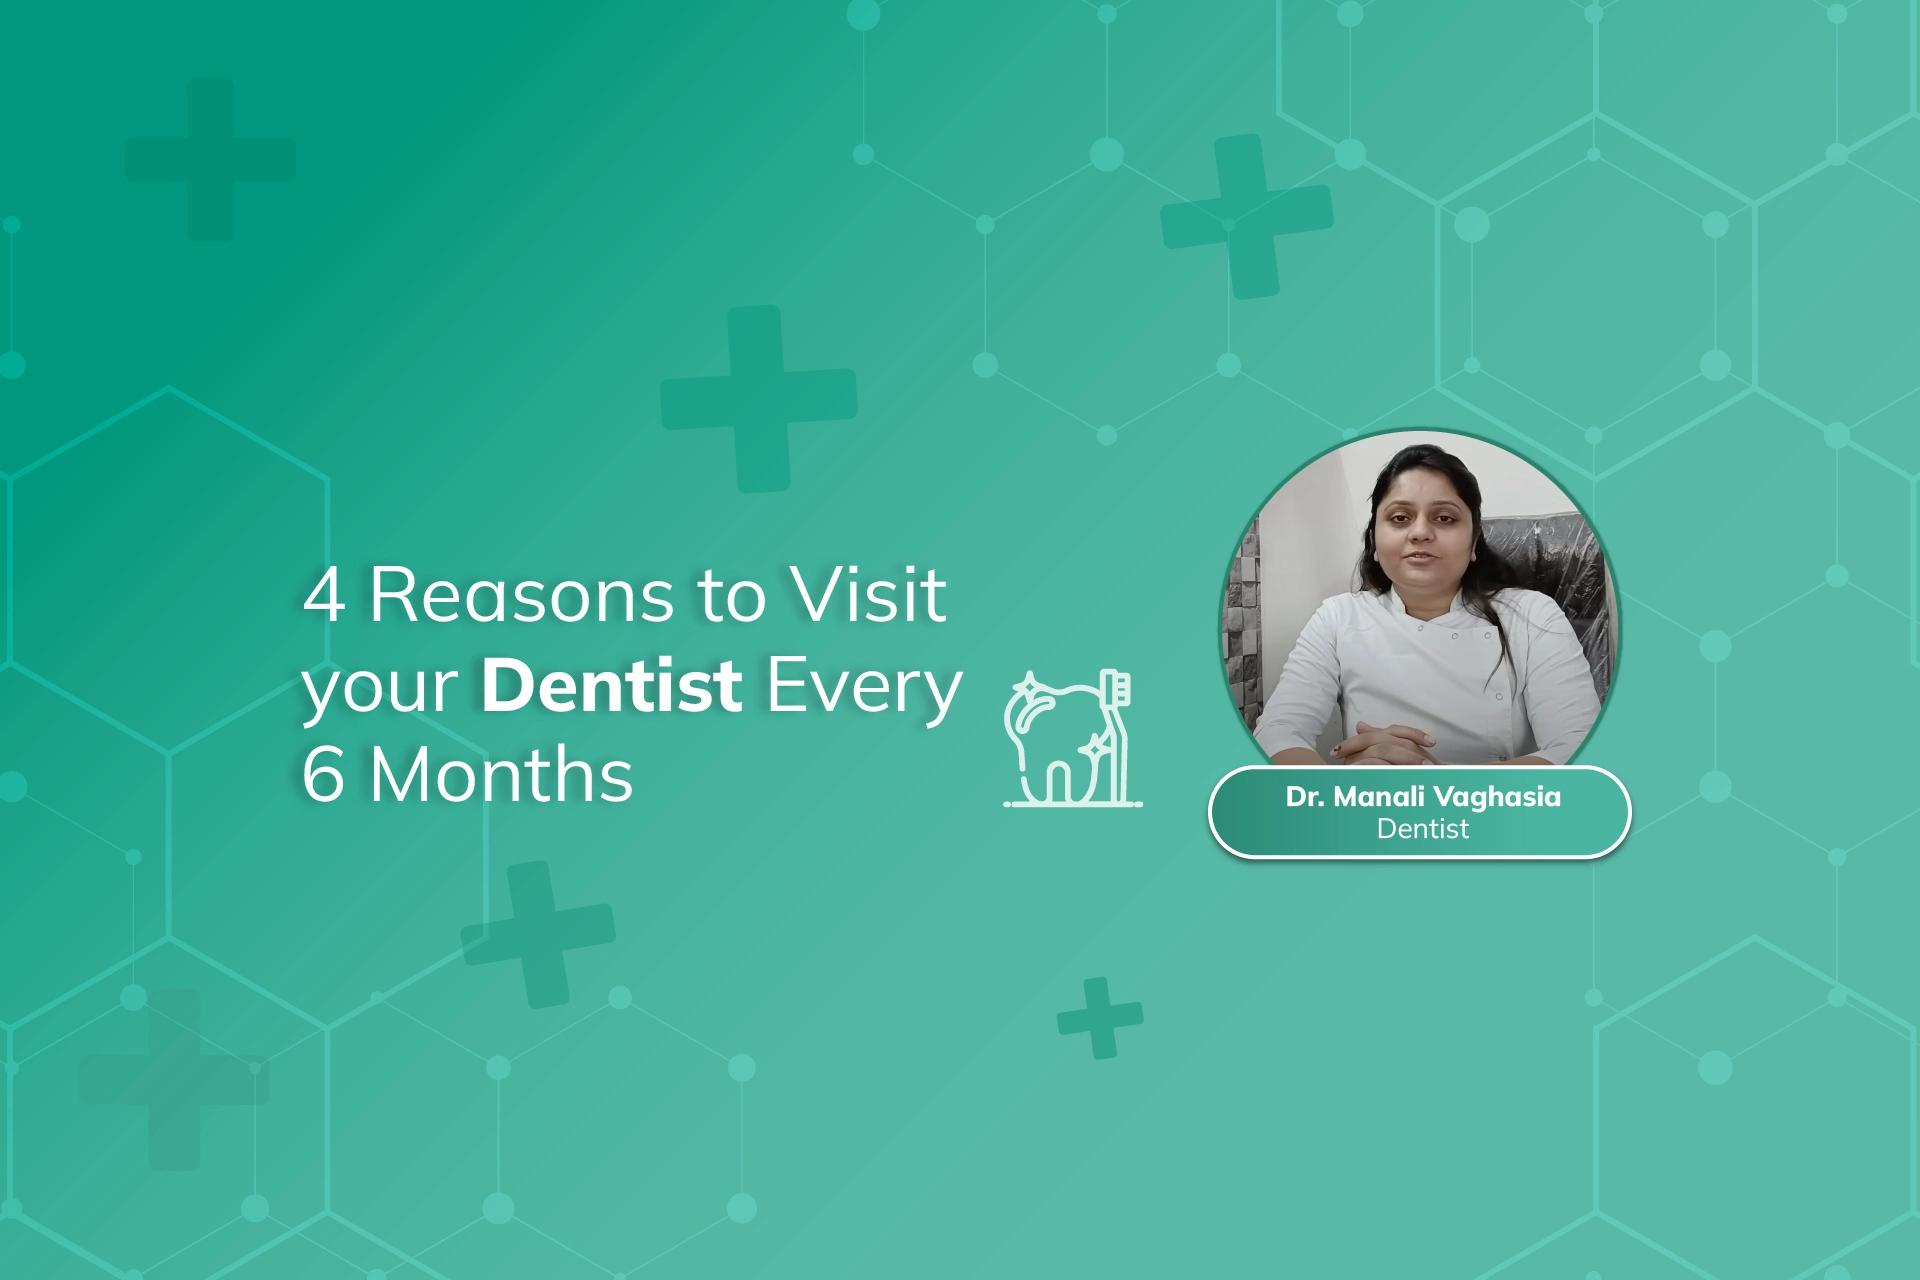 डॉ मनाली वघासिया यांनी दर 6 महिन्यांनी आपल्या दंतवैद्याला भेट देण्याची 4 कारणे